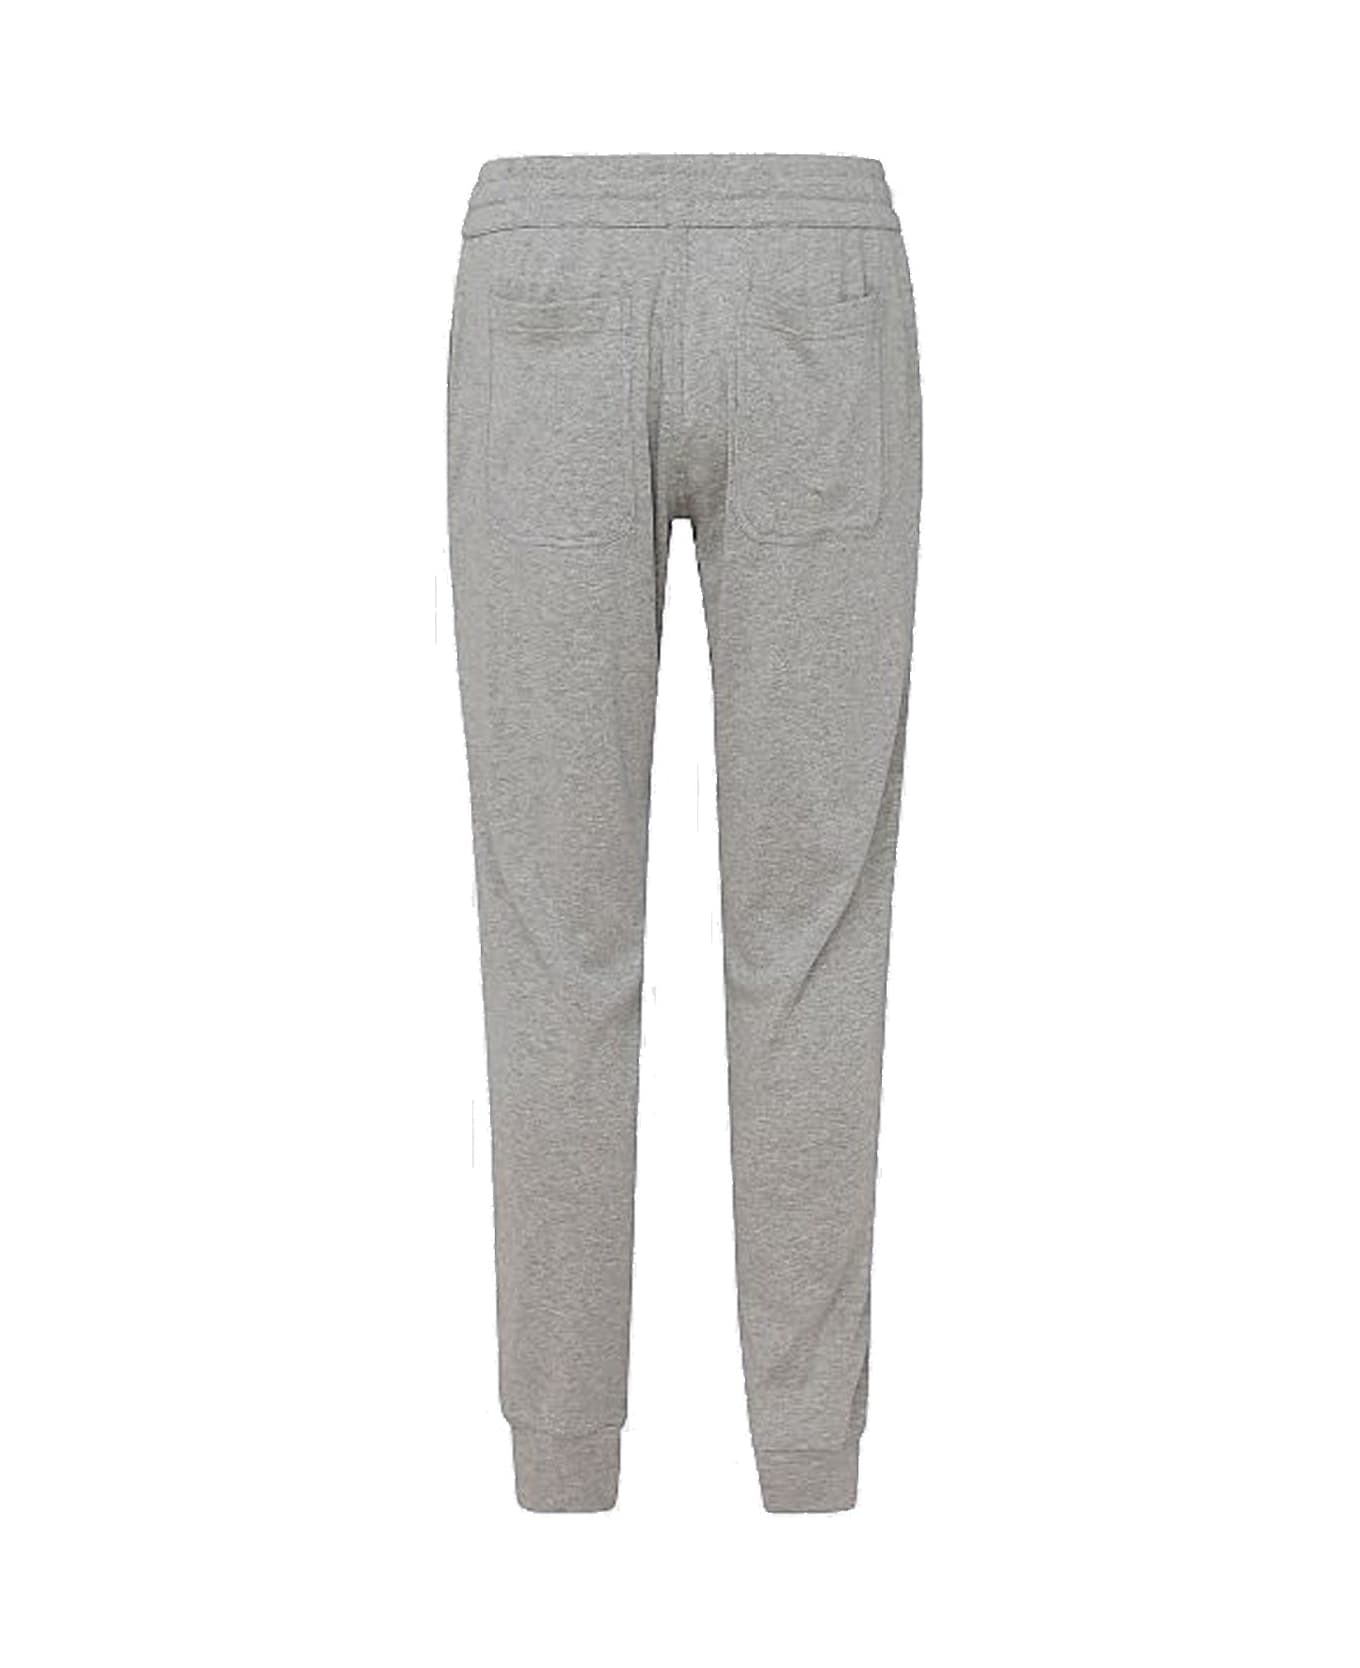 Tom Ford Cotton Sweatpants - Gray スウェットパンツ